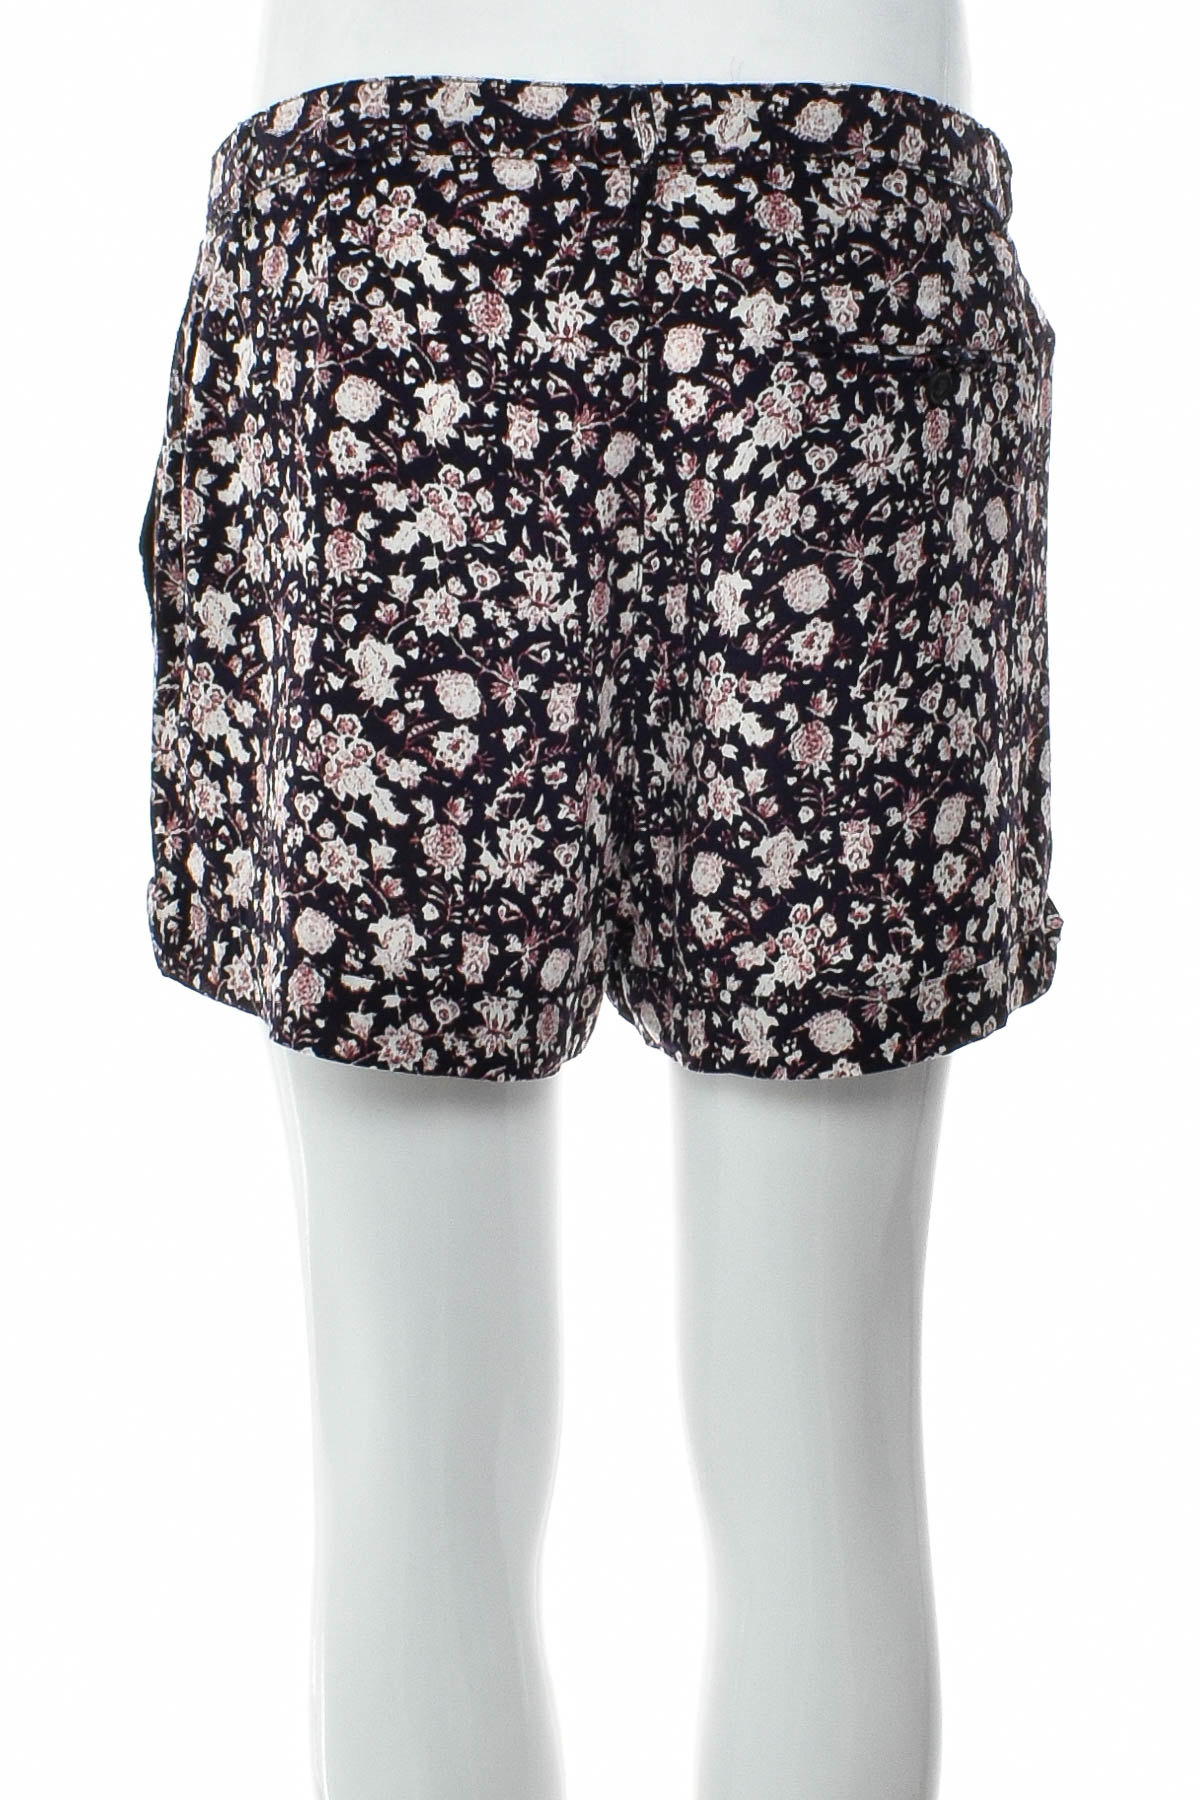 Female shorts - MANGO CASUAL - 1